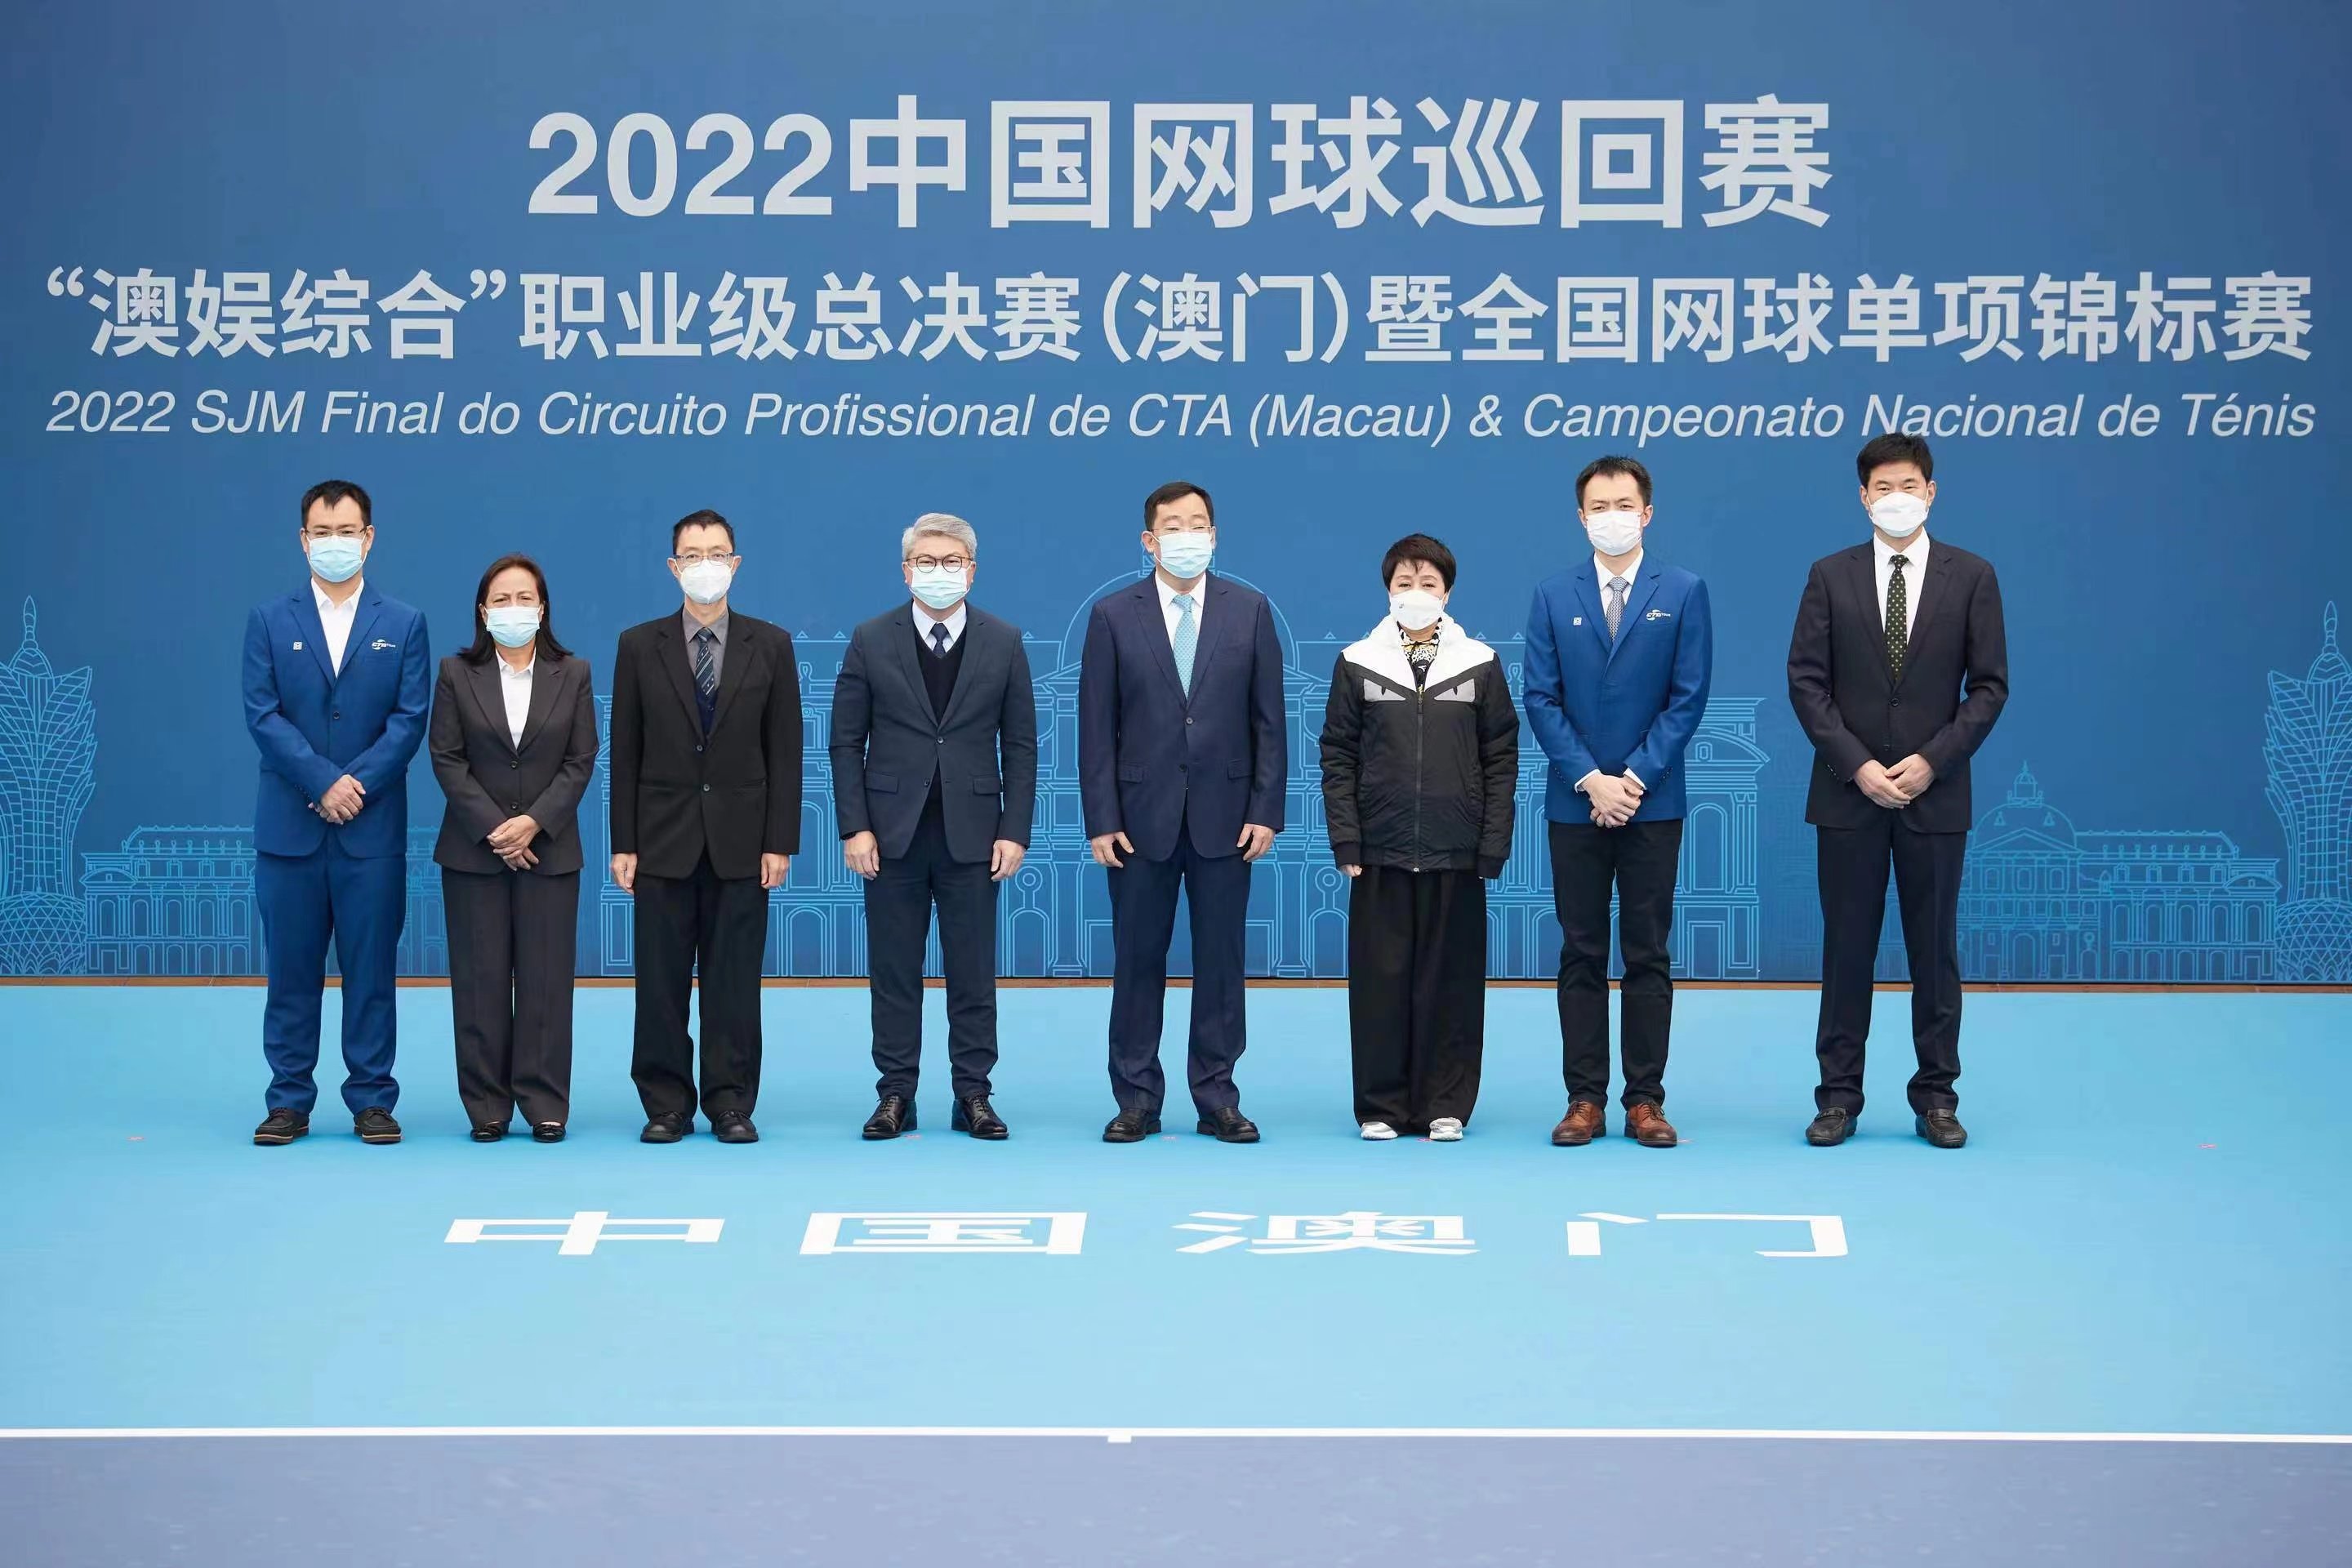 2022中国网球巡回赛职业级总决赛澳门开赛